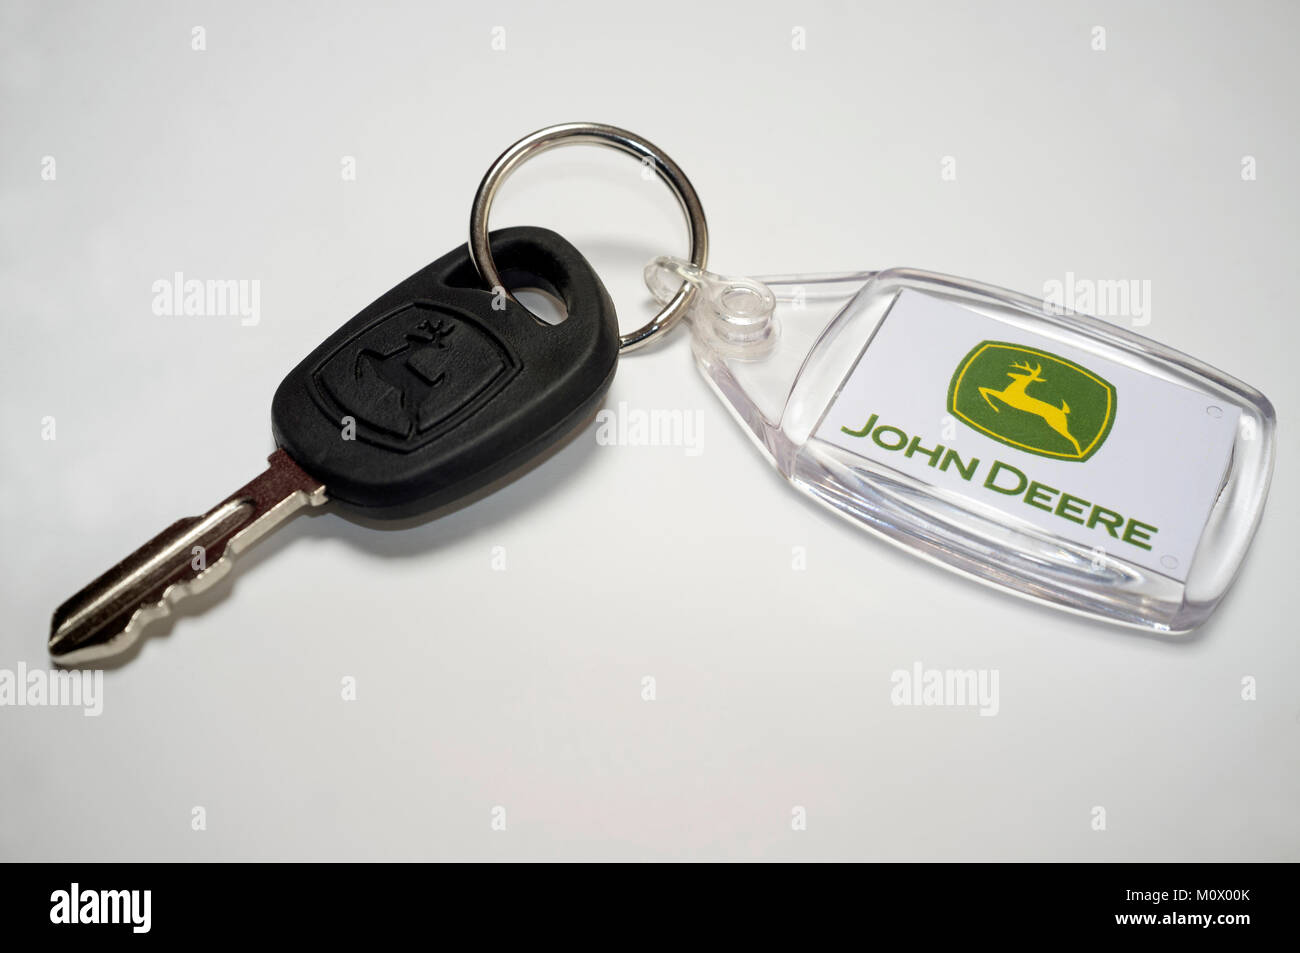 John Deere Traktor Schlüssel Stockfotografie - Alamy